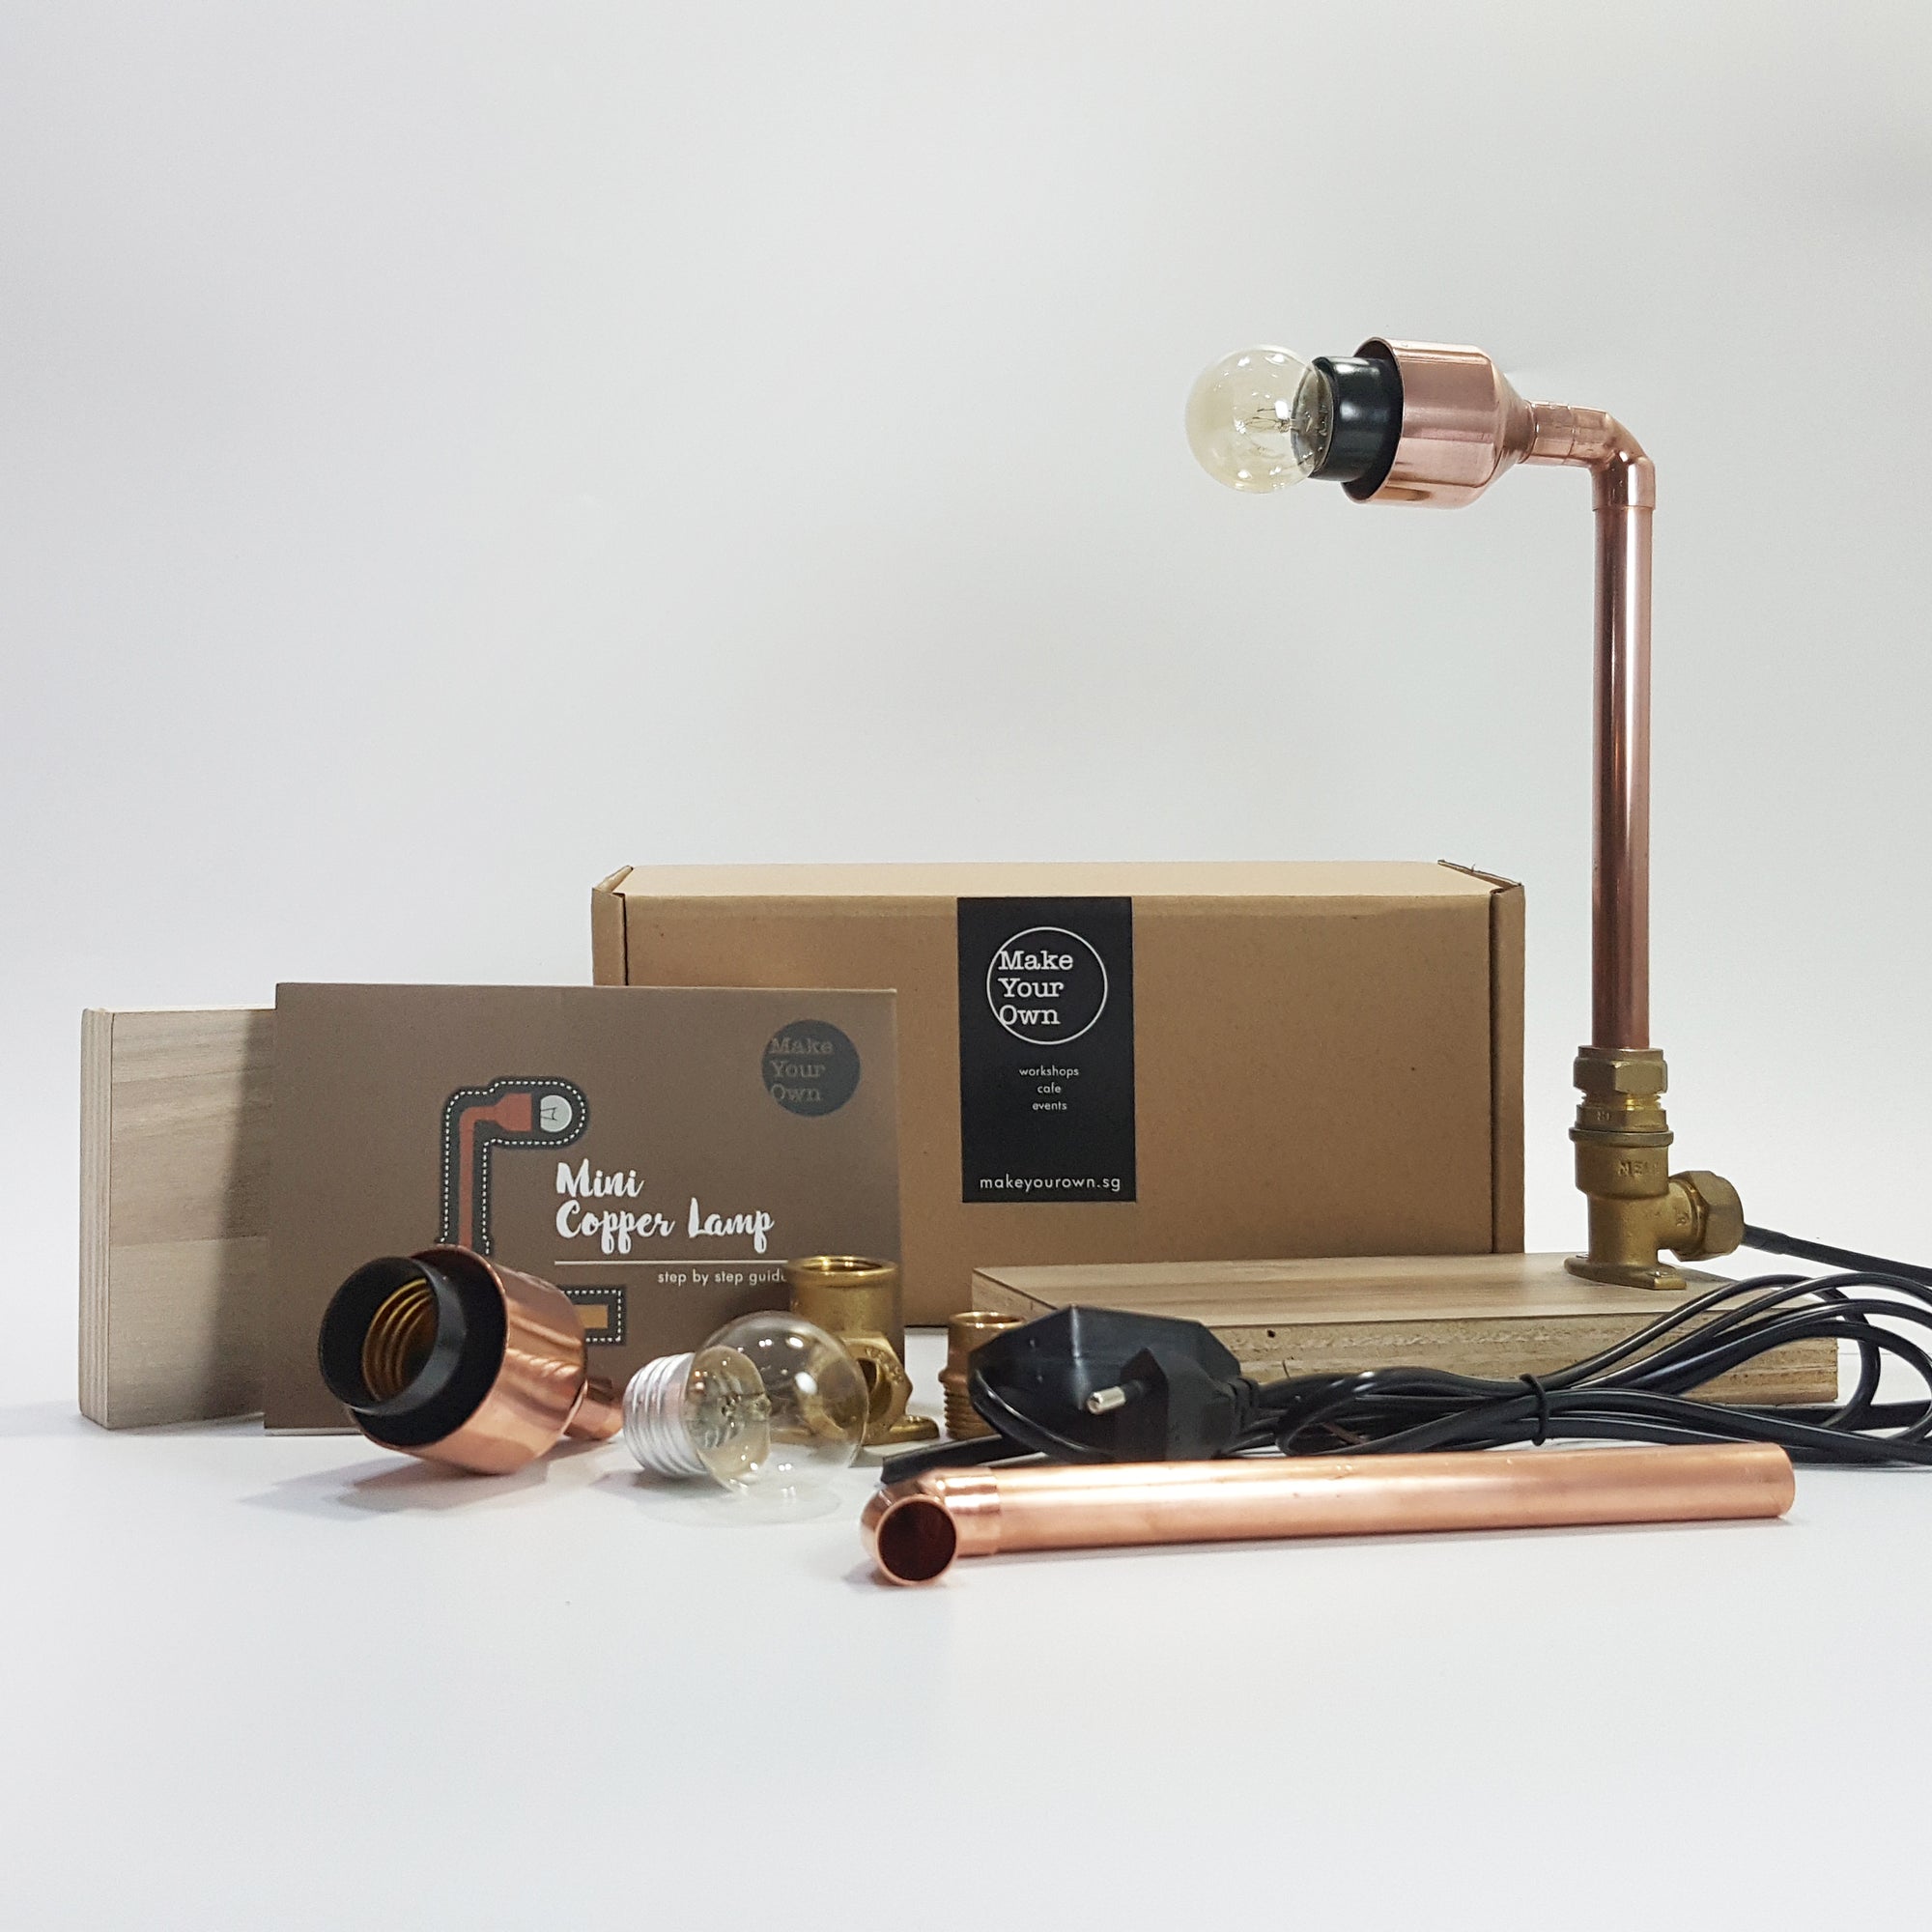 mini copper lamp diy kit Singapore